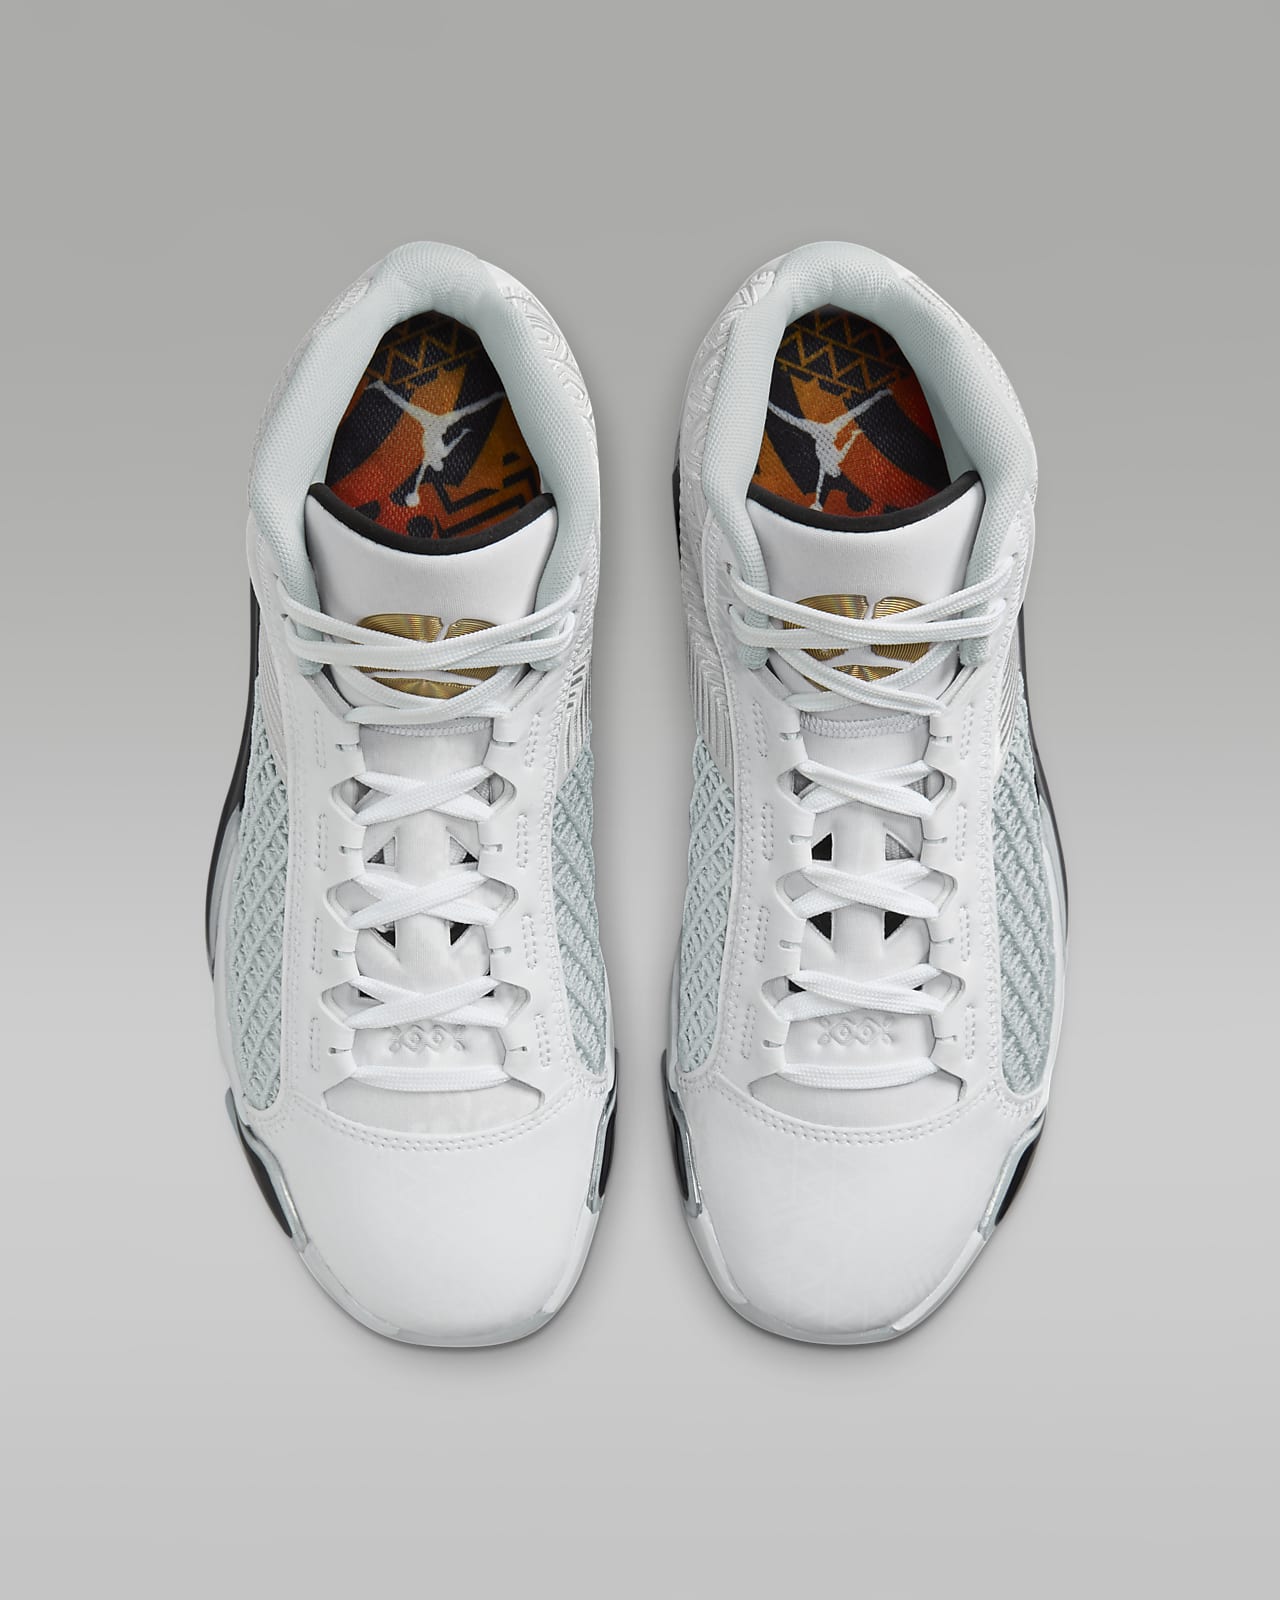 Supreme X Jordan Shoes - Search Shopping